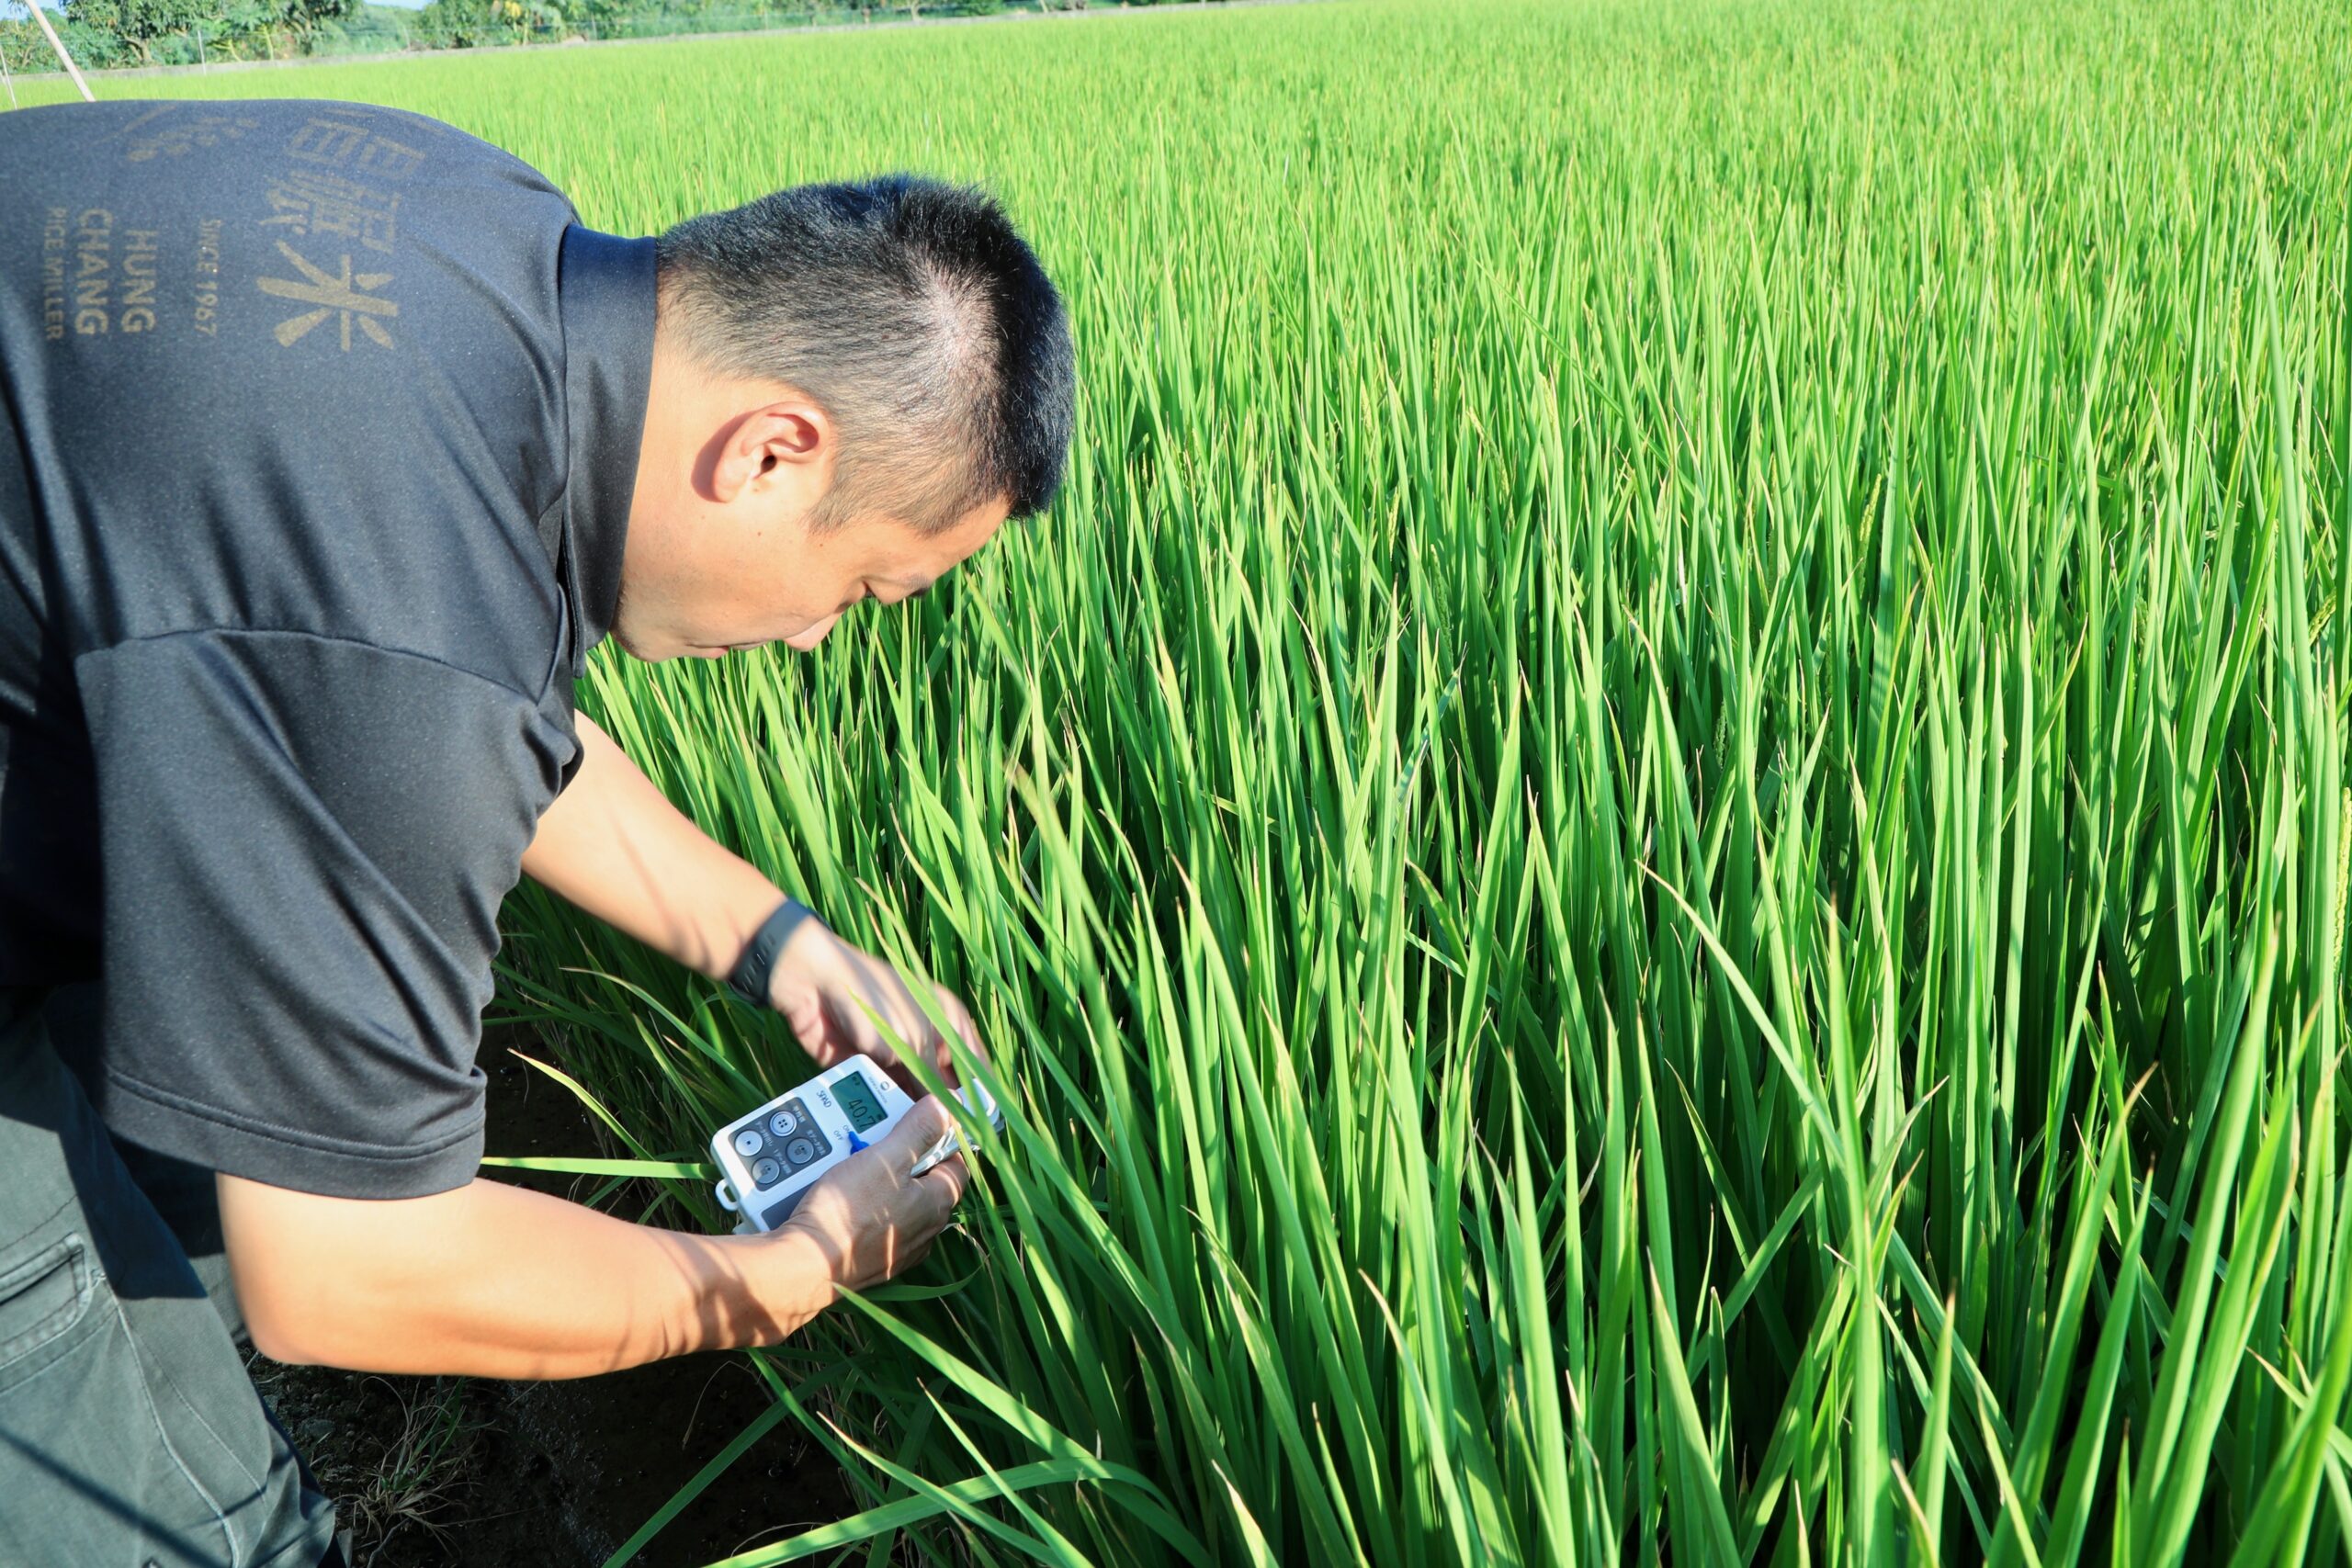 006弘昌碾米廠導入多樣智慧農業儀器檢測稻米的含水量、土壤與病蟲害等數據，對症下藥與調整播與收割日期，讓稻米品質更好。002